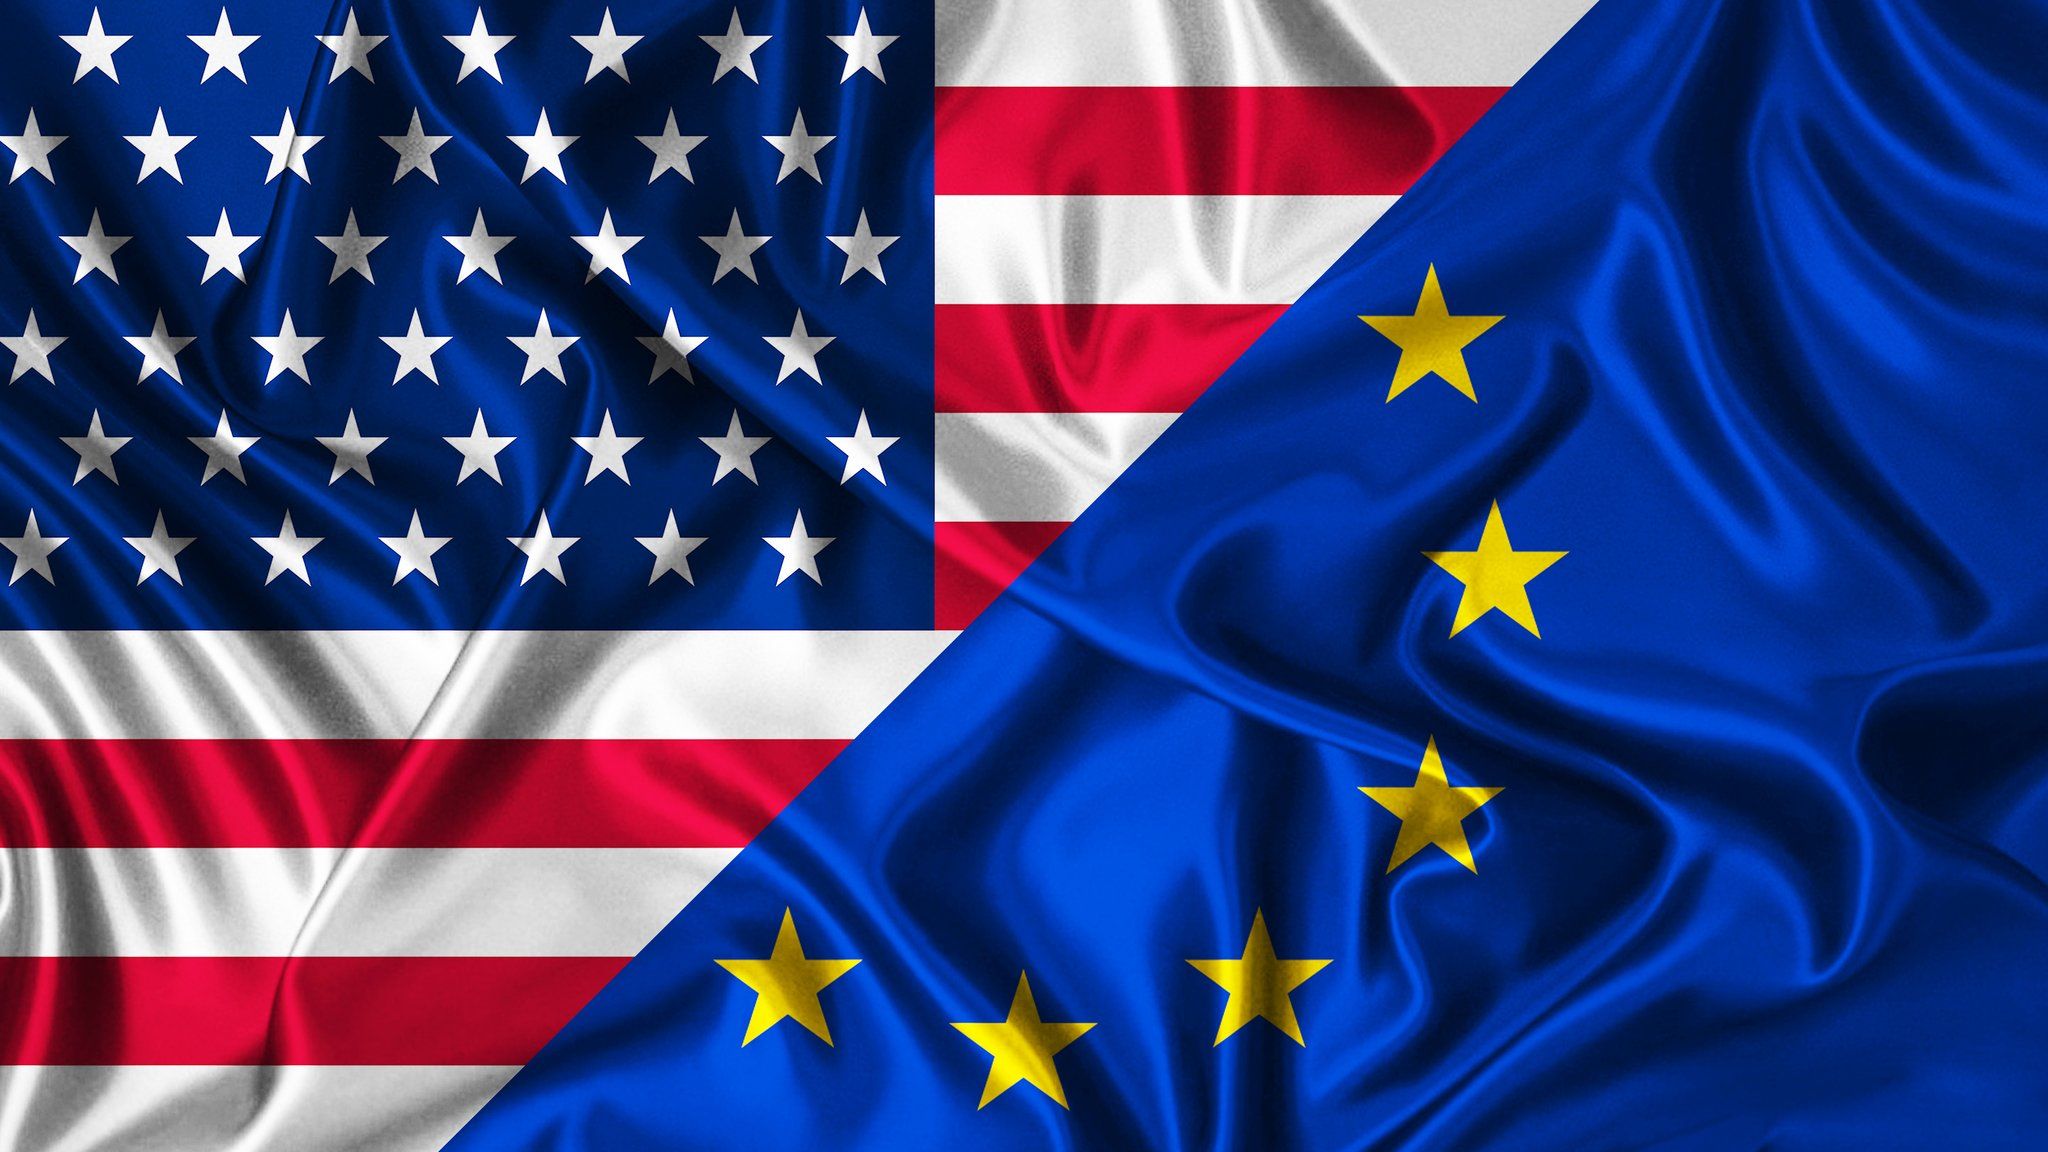 US flag next to EU flag